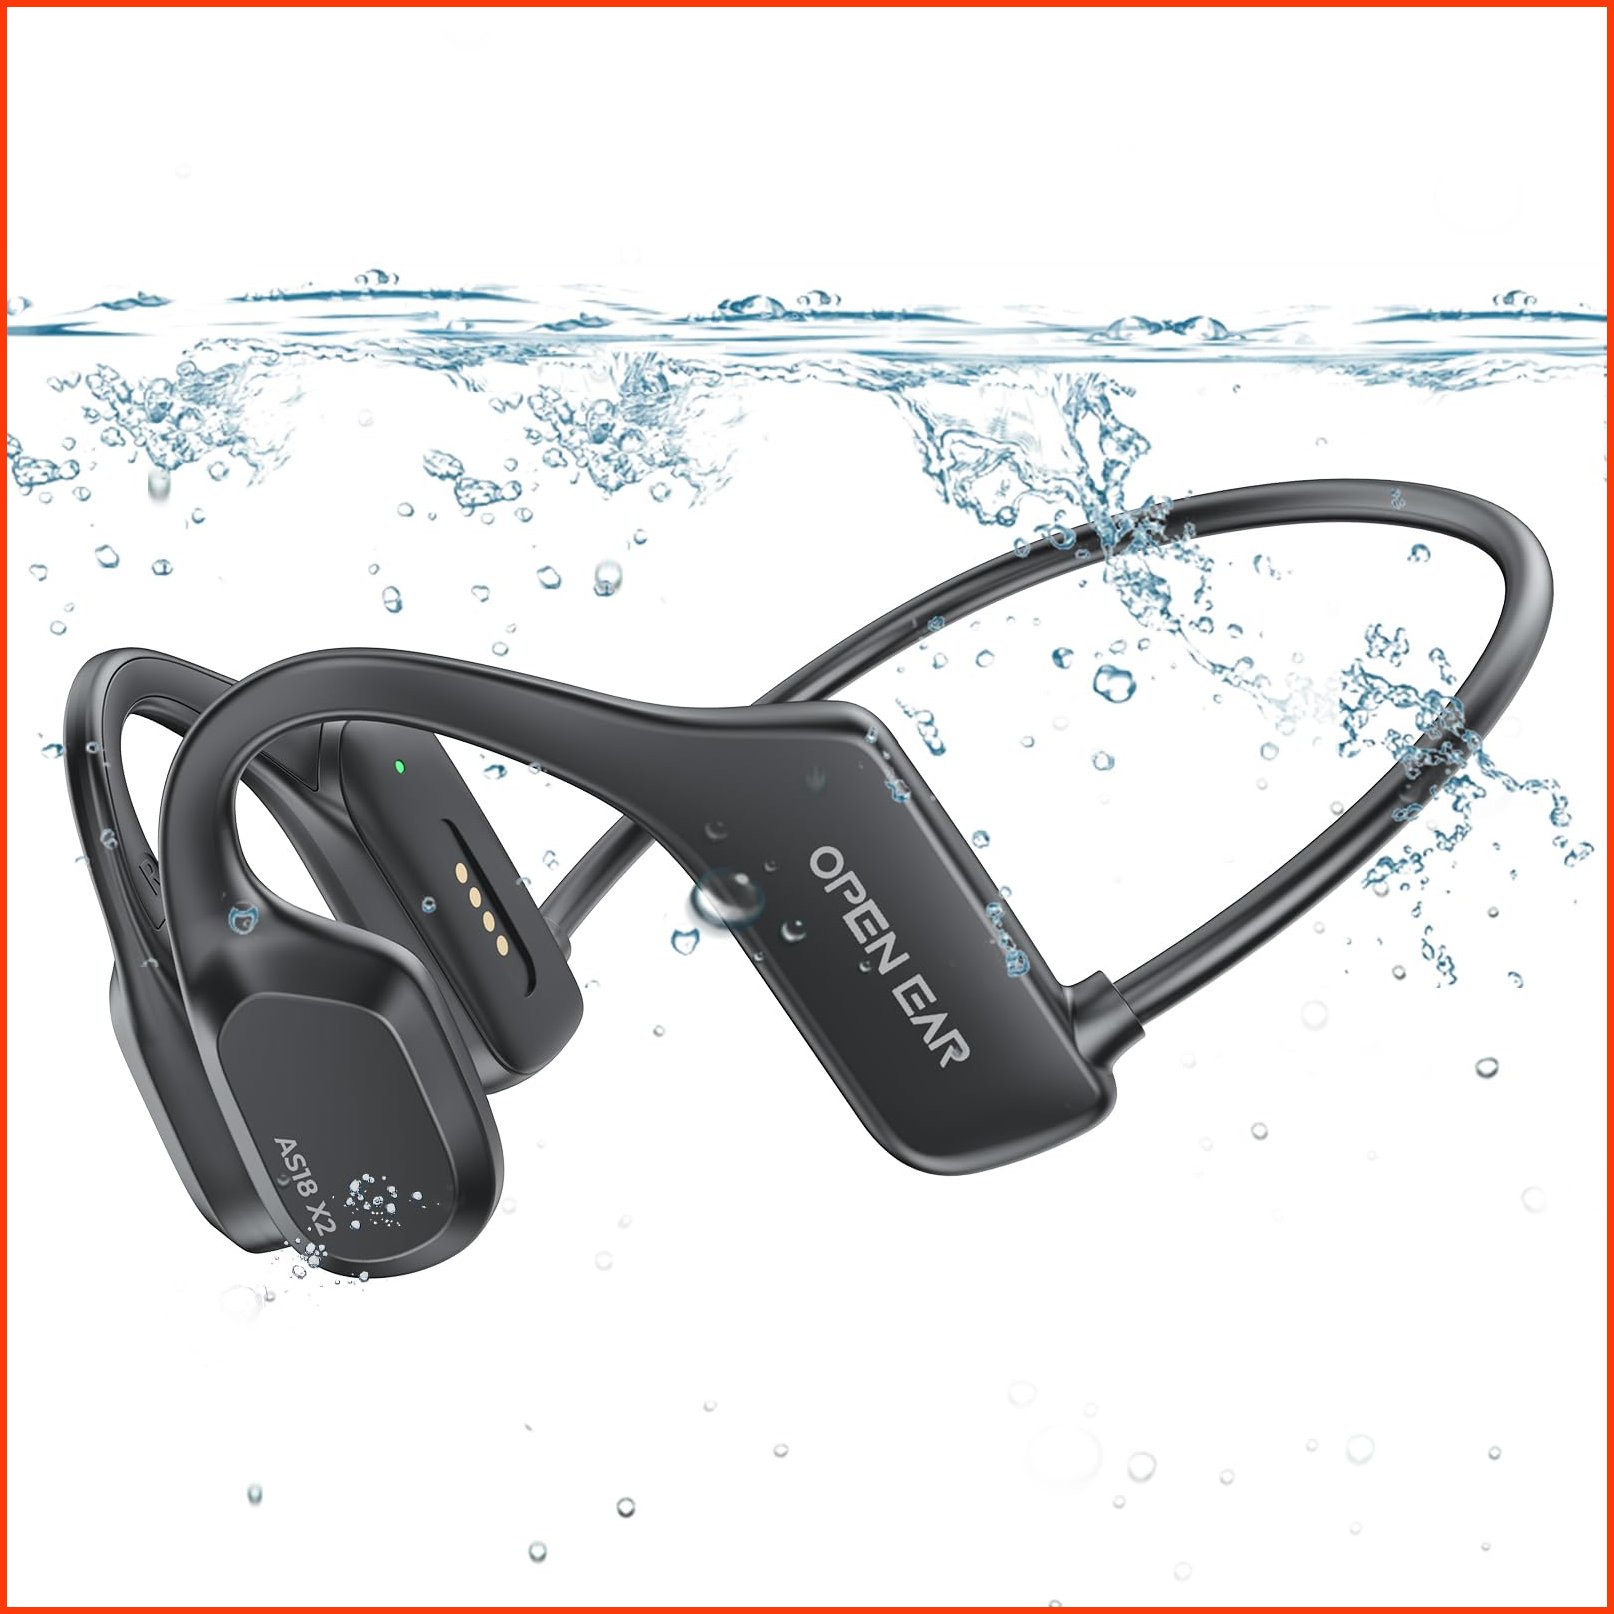 並行輸入品Hyyeosd Bone Conduction Headphones Bluetooth Earbuds Wireless Headphones Swimming Headphones Built-in 16GB Op